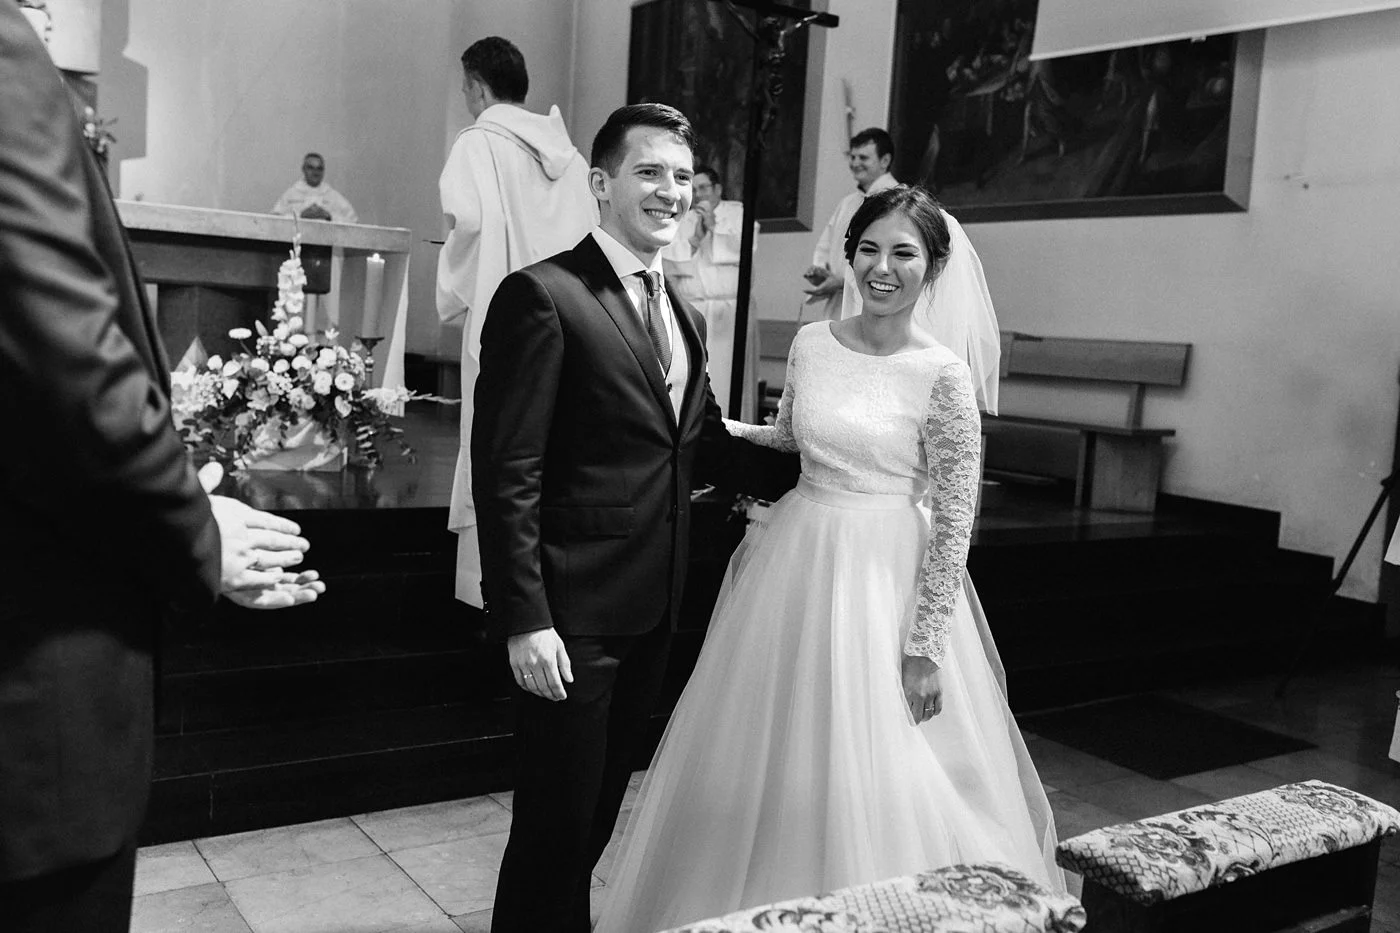 Dominika & Aleksander - Rustykalne wesele w stodole - Baborówko 60